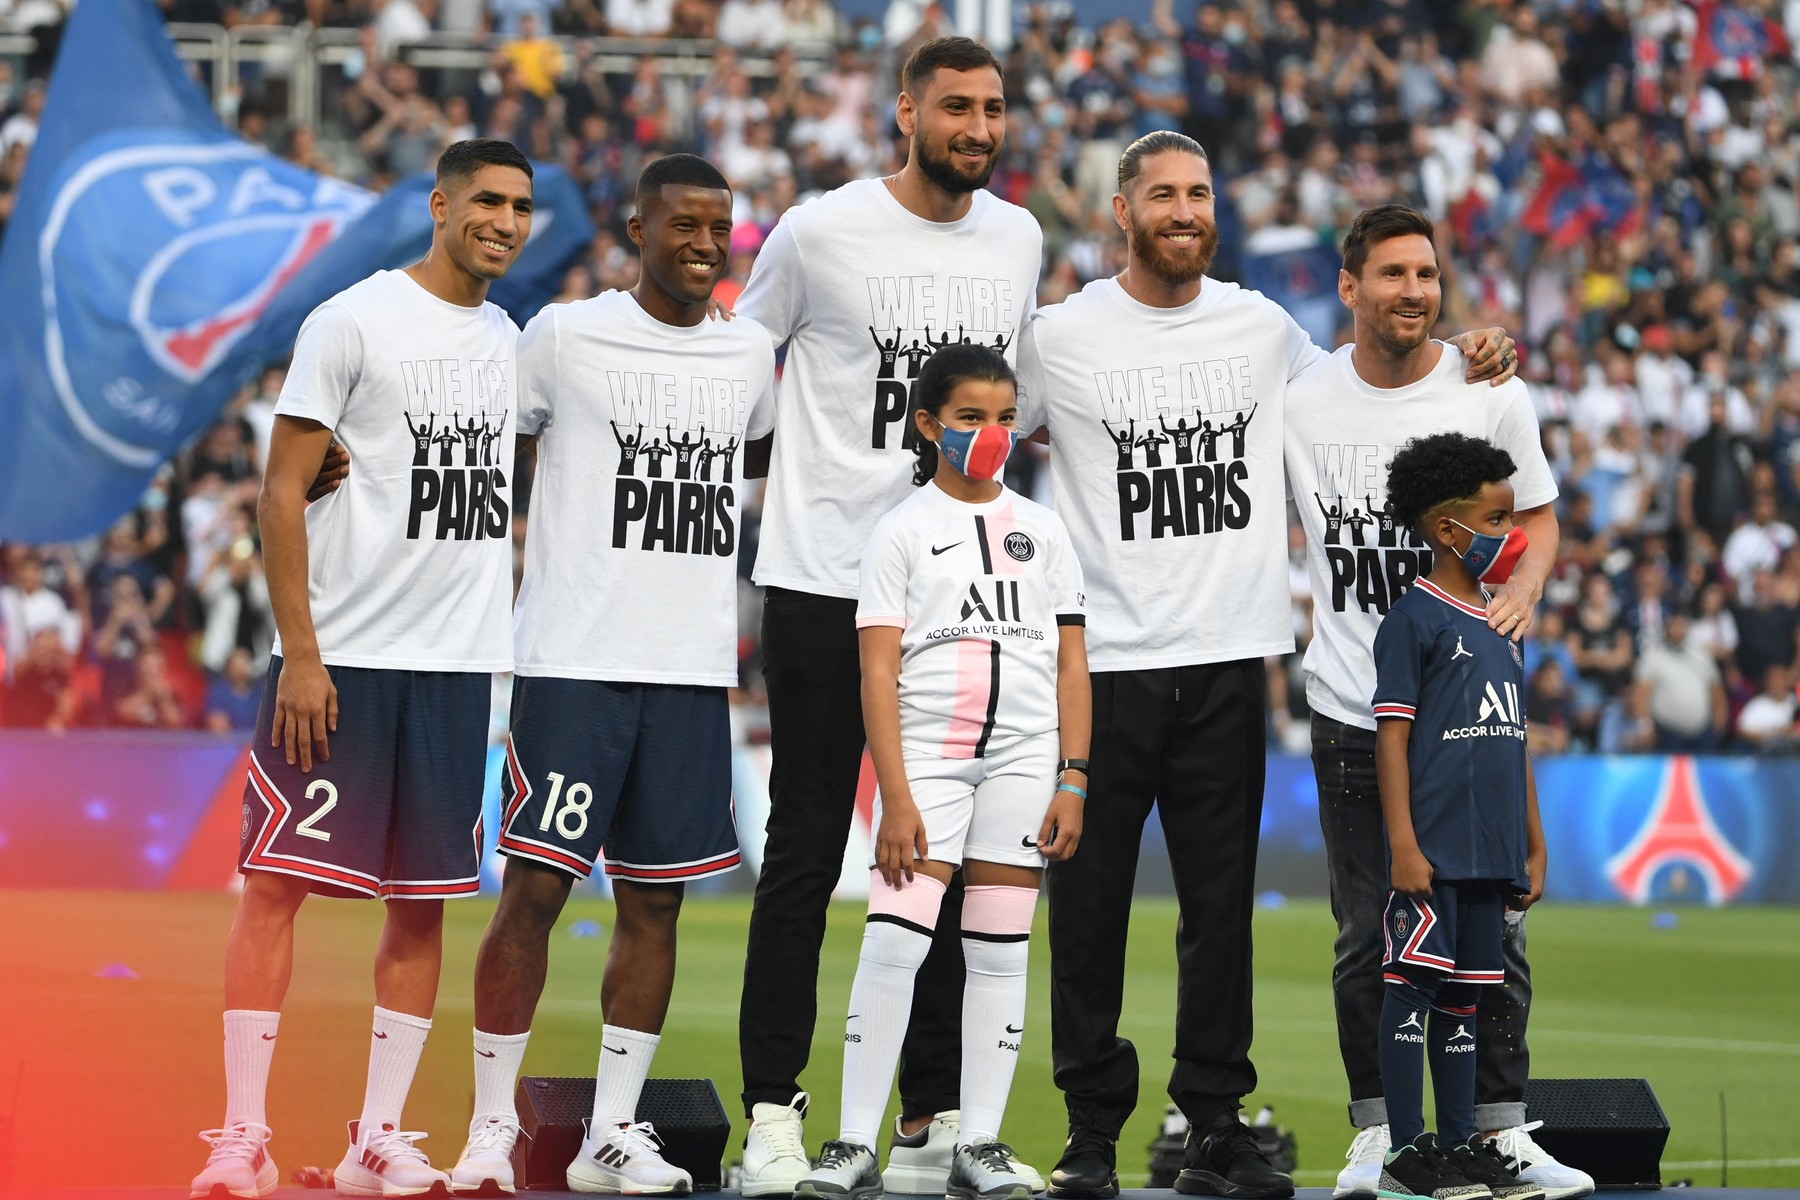 Noii jucători ai lui PSG, prezentați în fața fanilor